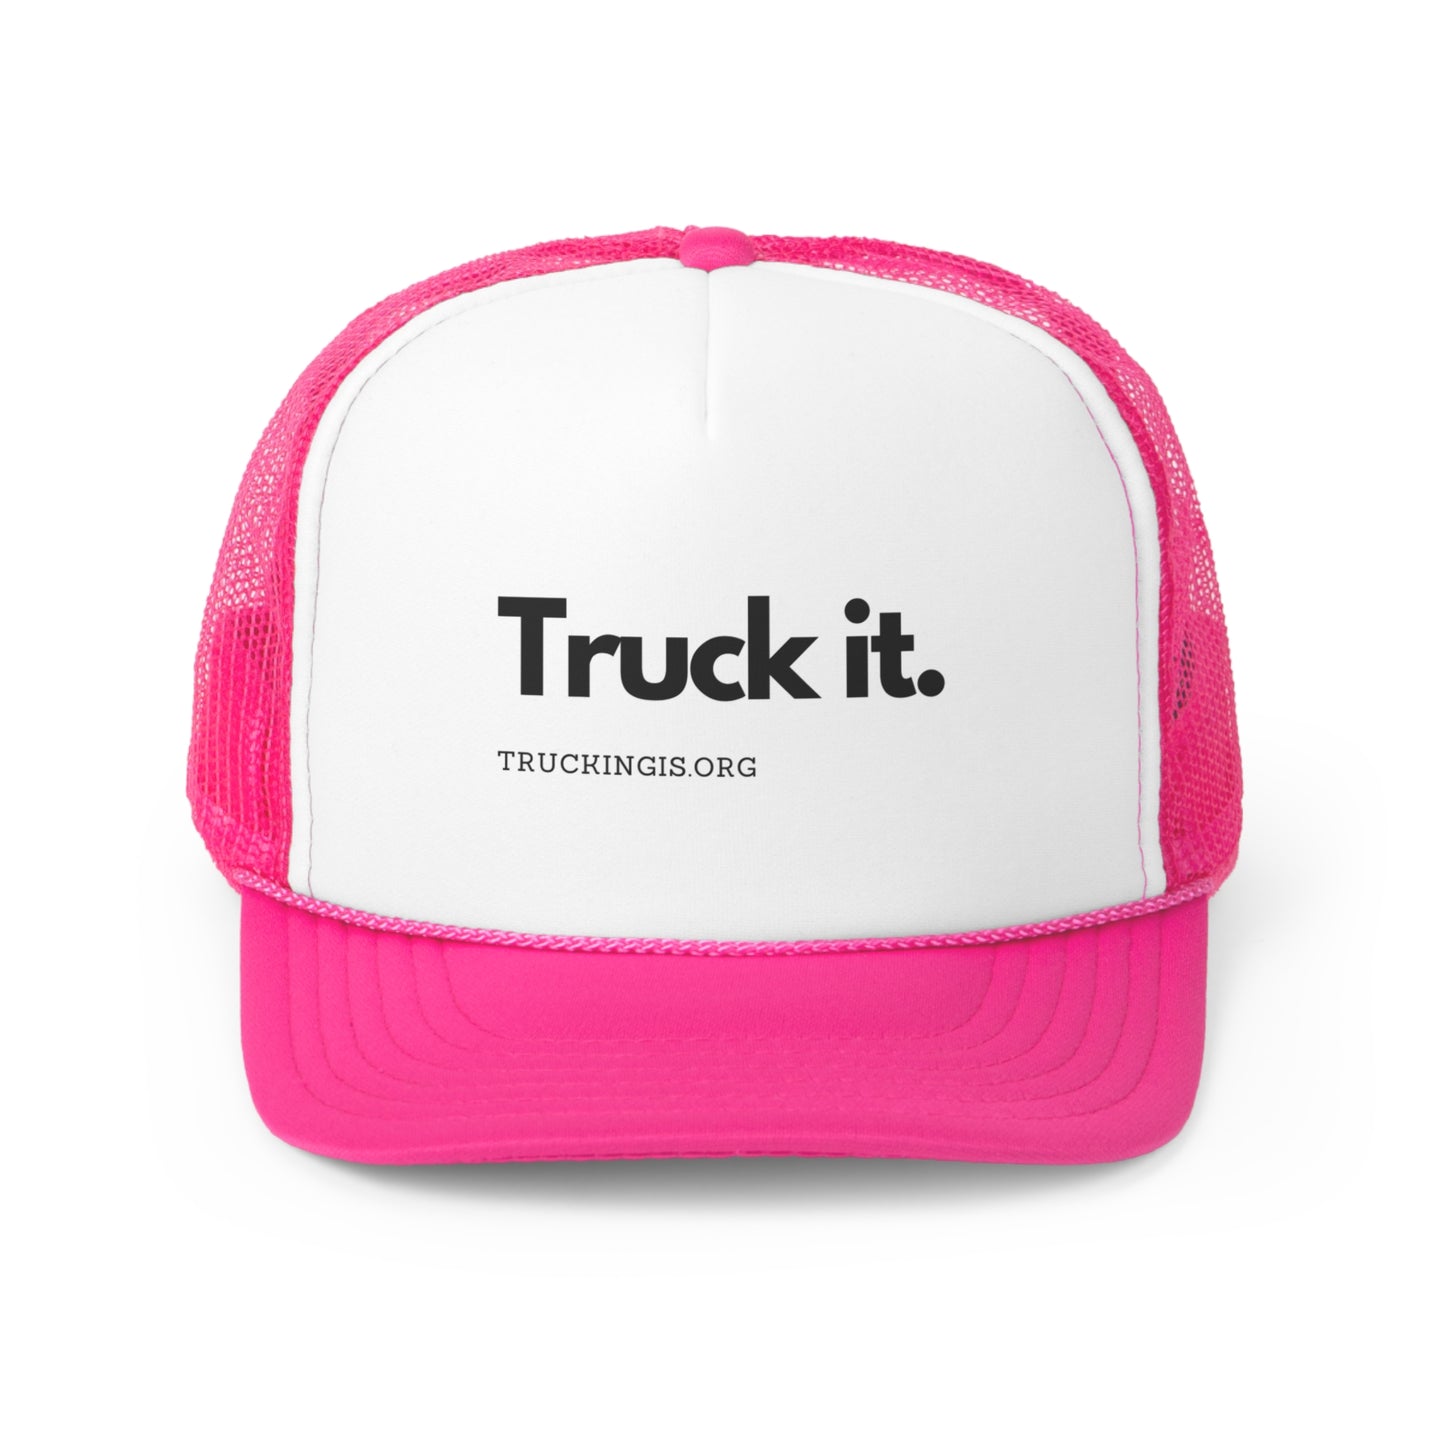 Trucker Caps